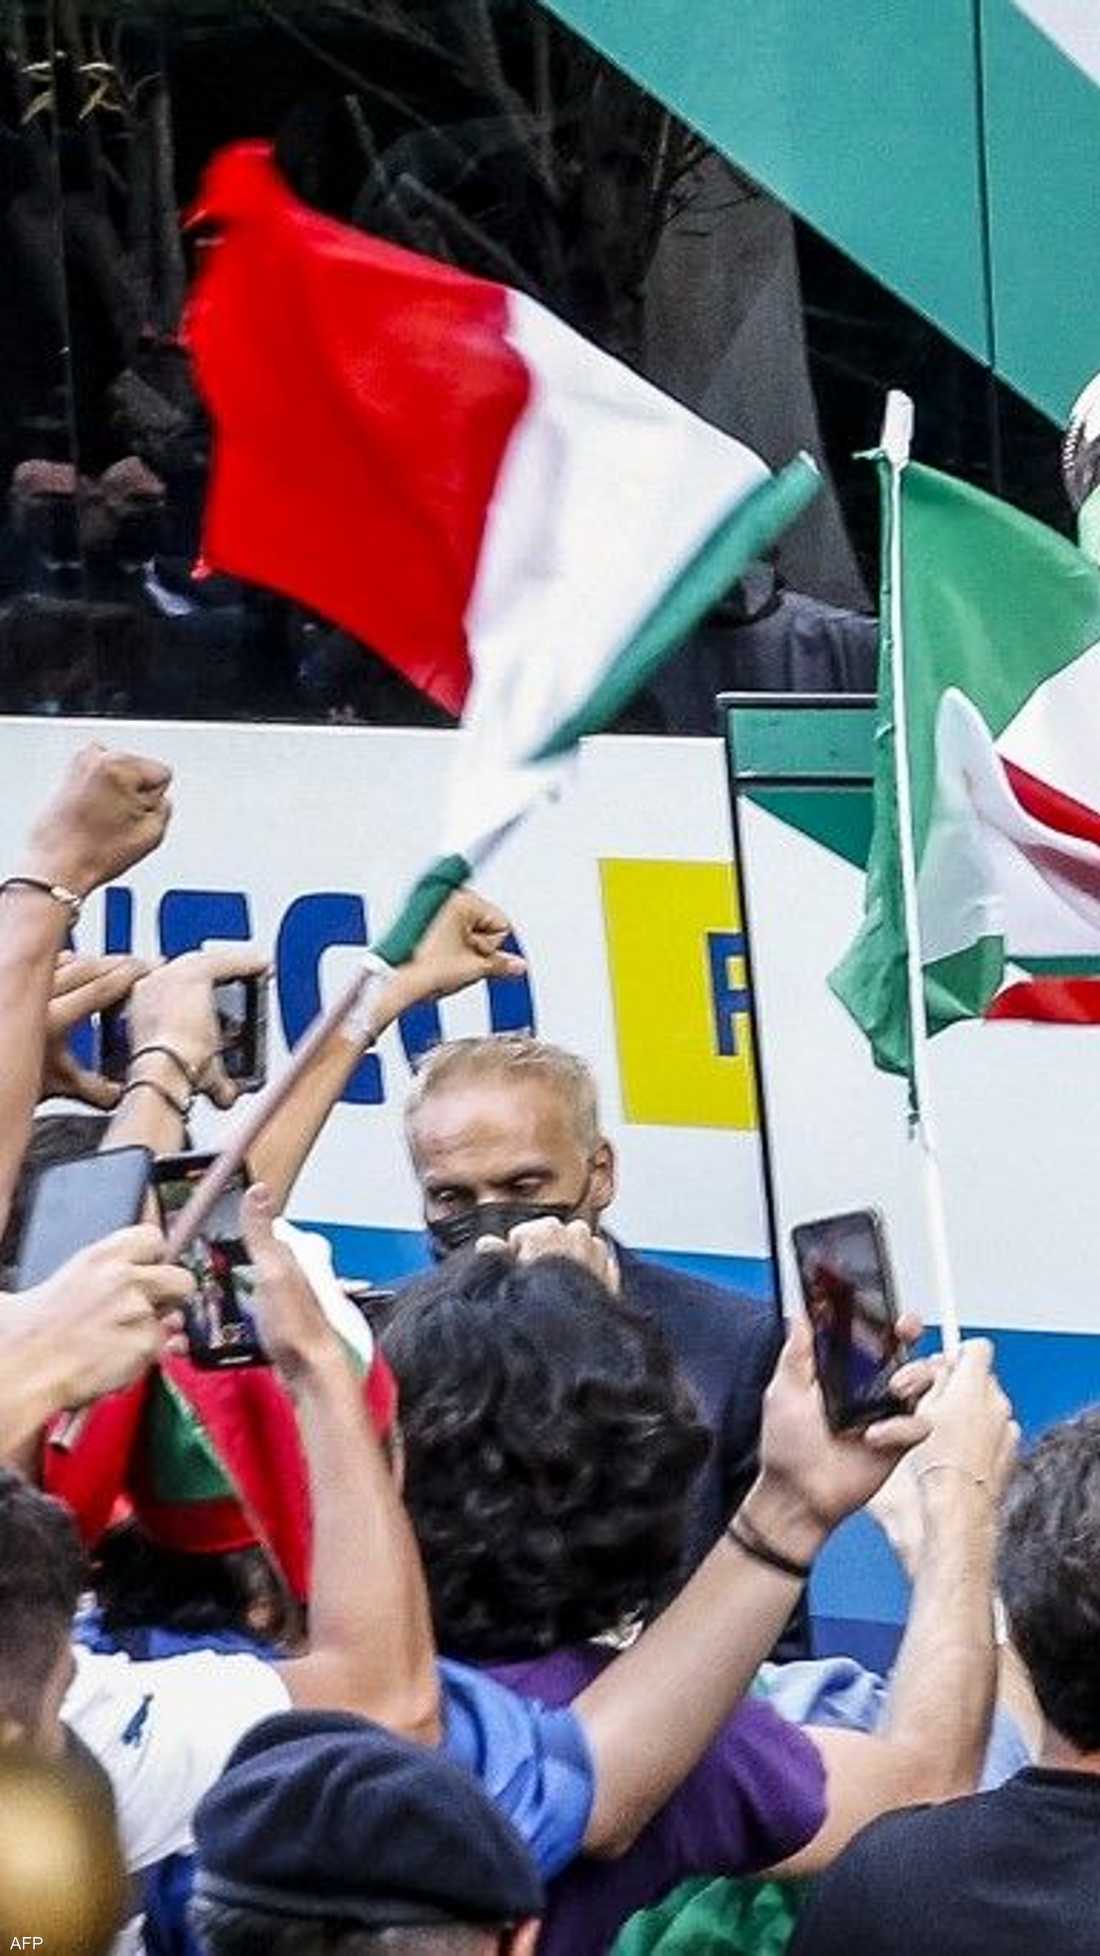 احتفل الإيطاليون بلقب بطولة أوروبا لكرة القدم كبداية جديدة ليس فقط لمنتخبهم الوطني الشاب، ولكن لبلد يتوق إلى العودة إلى الحياة الطبيعية بعد أن تضرر بشدة وطويلة من جائحة فيروس كورونا.